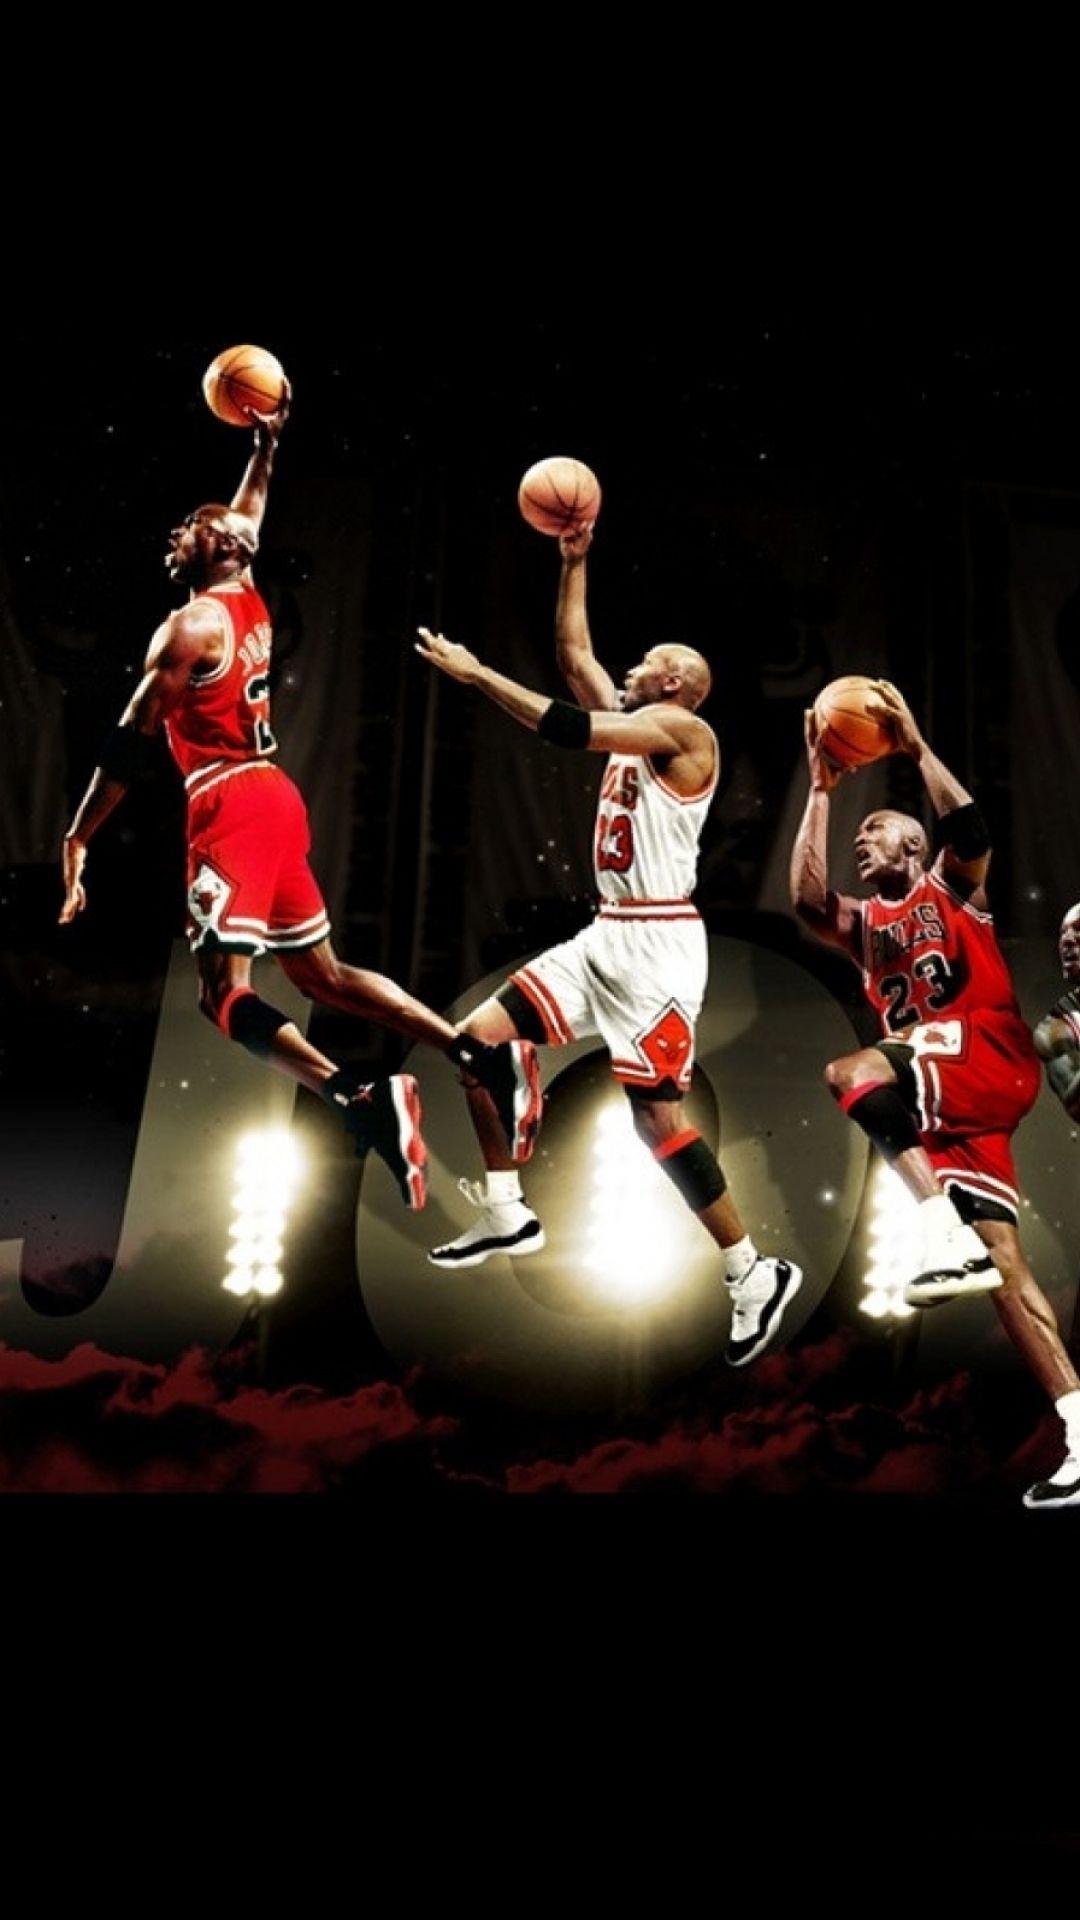 Michael Jordan phone wallpaper» 1080P, 2k, 4k Full HD Wallpapers,  Backgrounds Free Download | Wallpaper Crafter